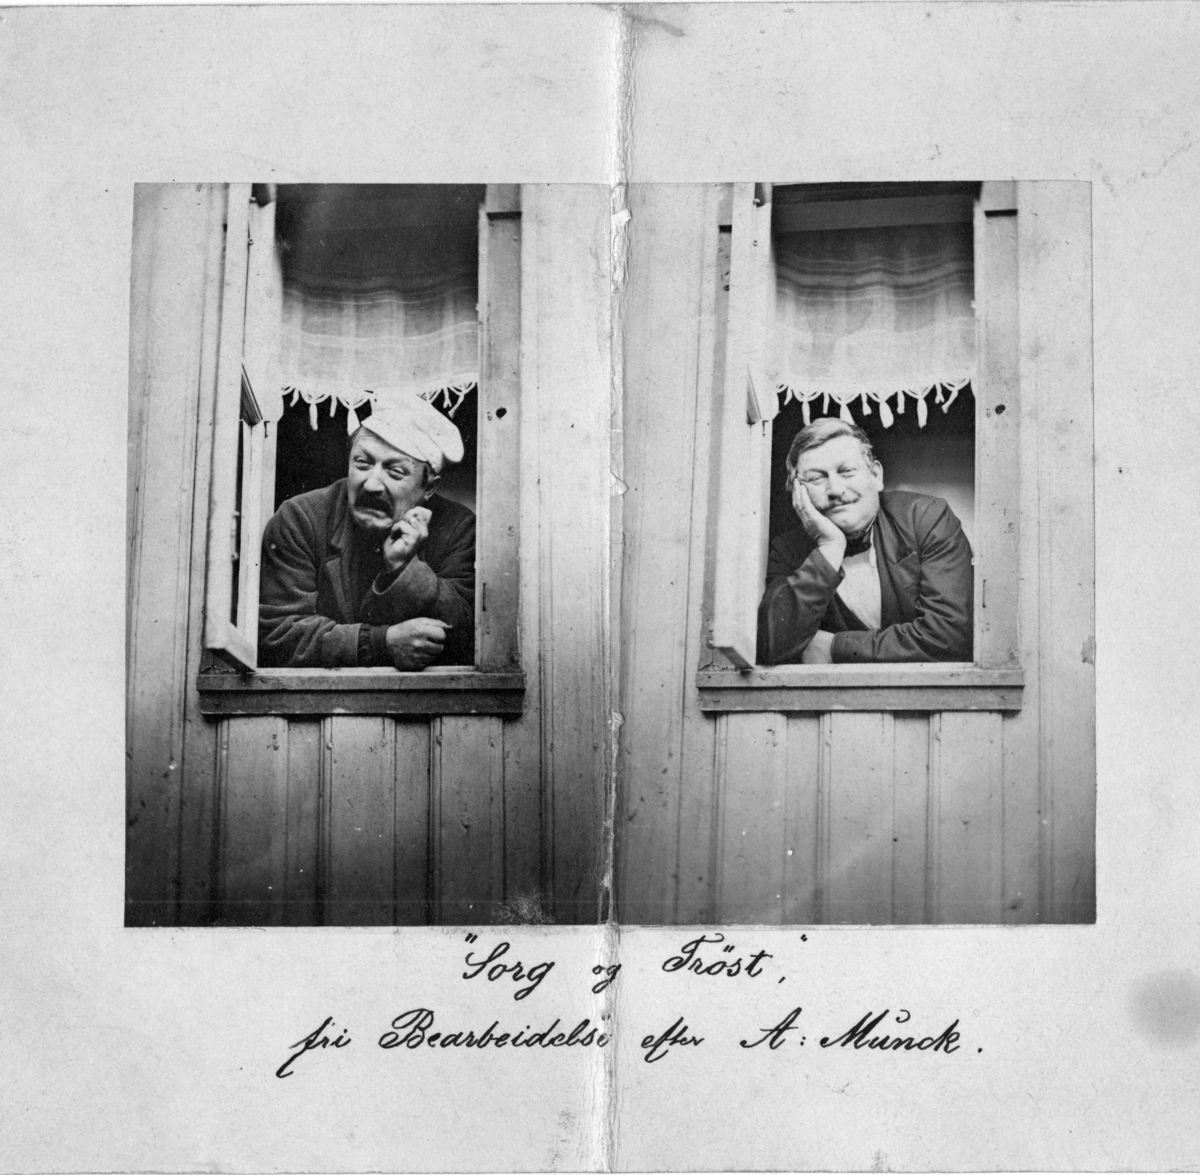 Ssammensatt, humoristisk motiv: to menn i et vindu, den ene trist, den andre glad.